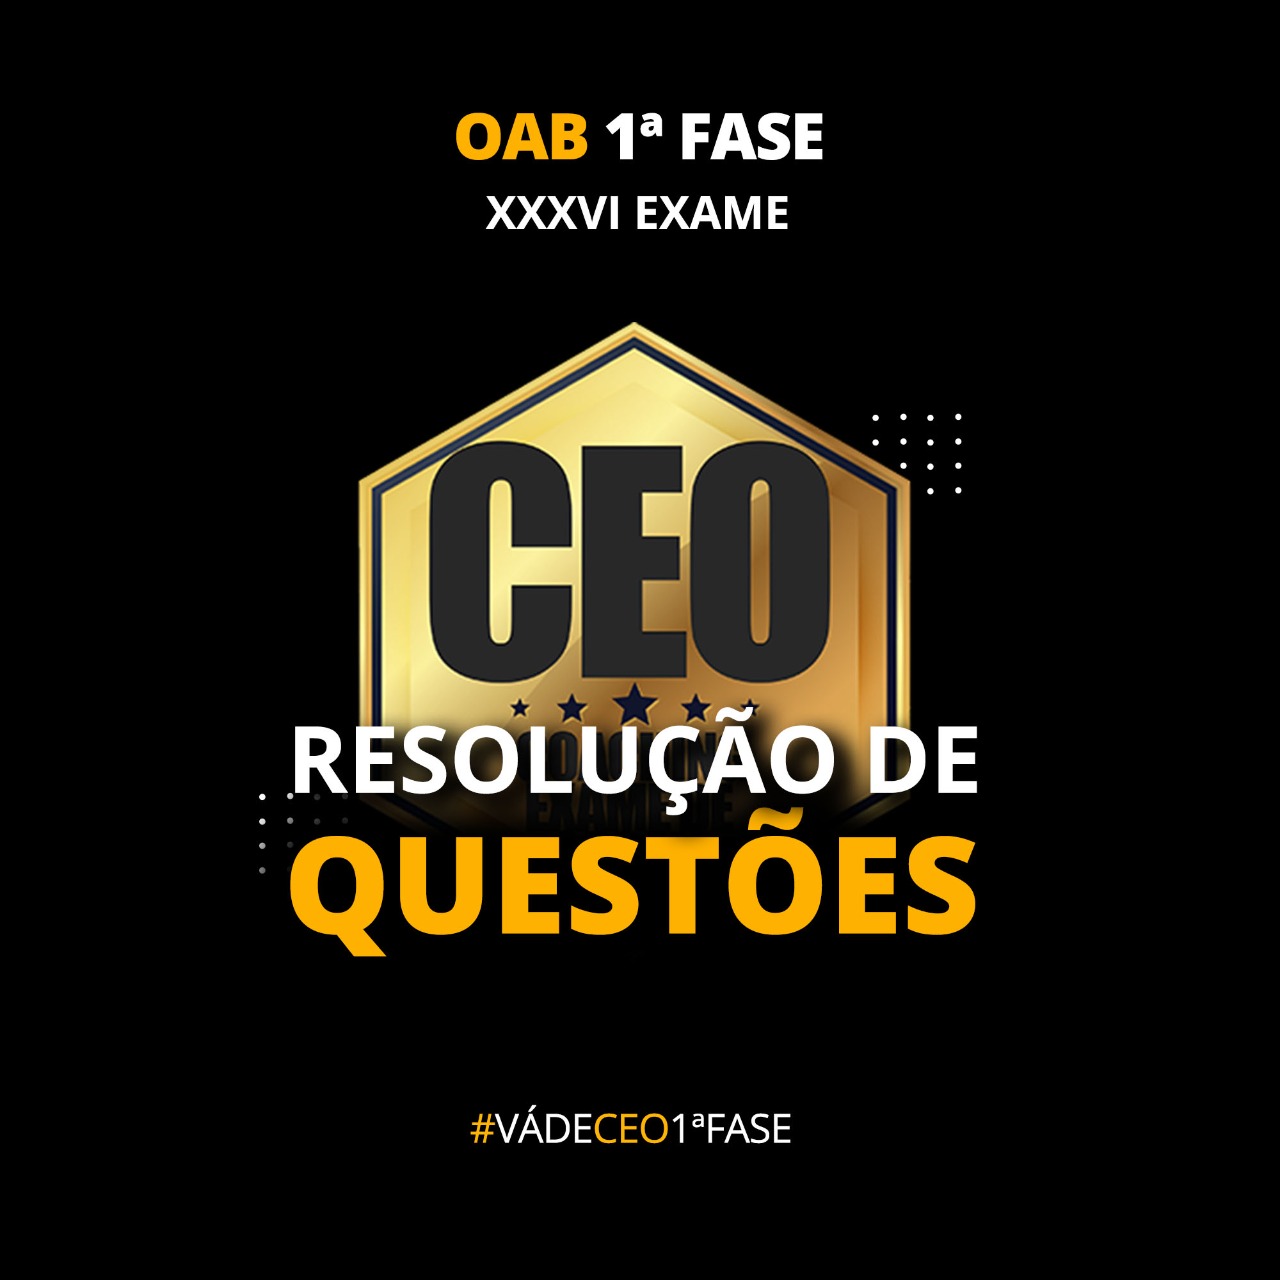 CEO RESOLUÇÃO DE QUESTÕES XXXVI EXAME - OAB 1ª FASE